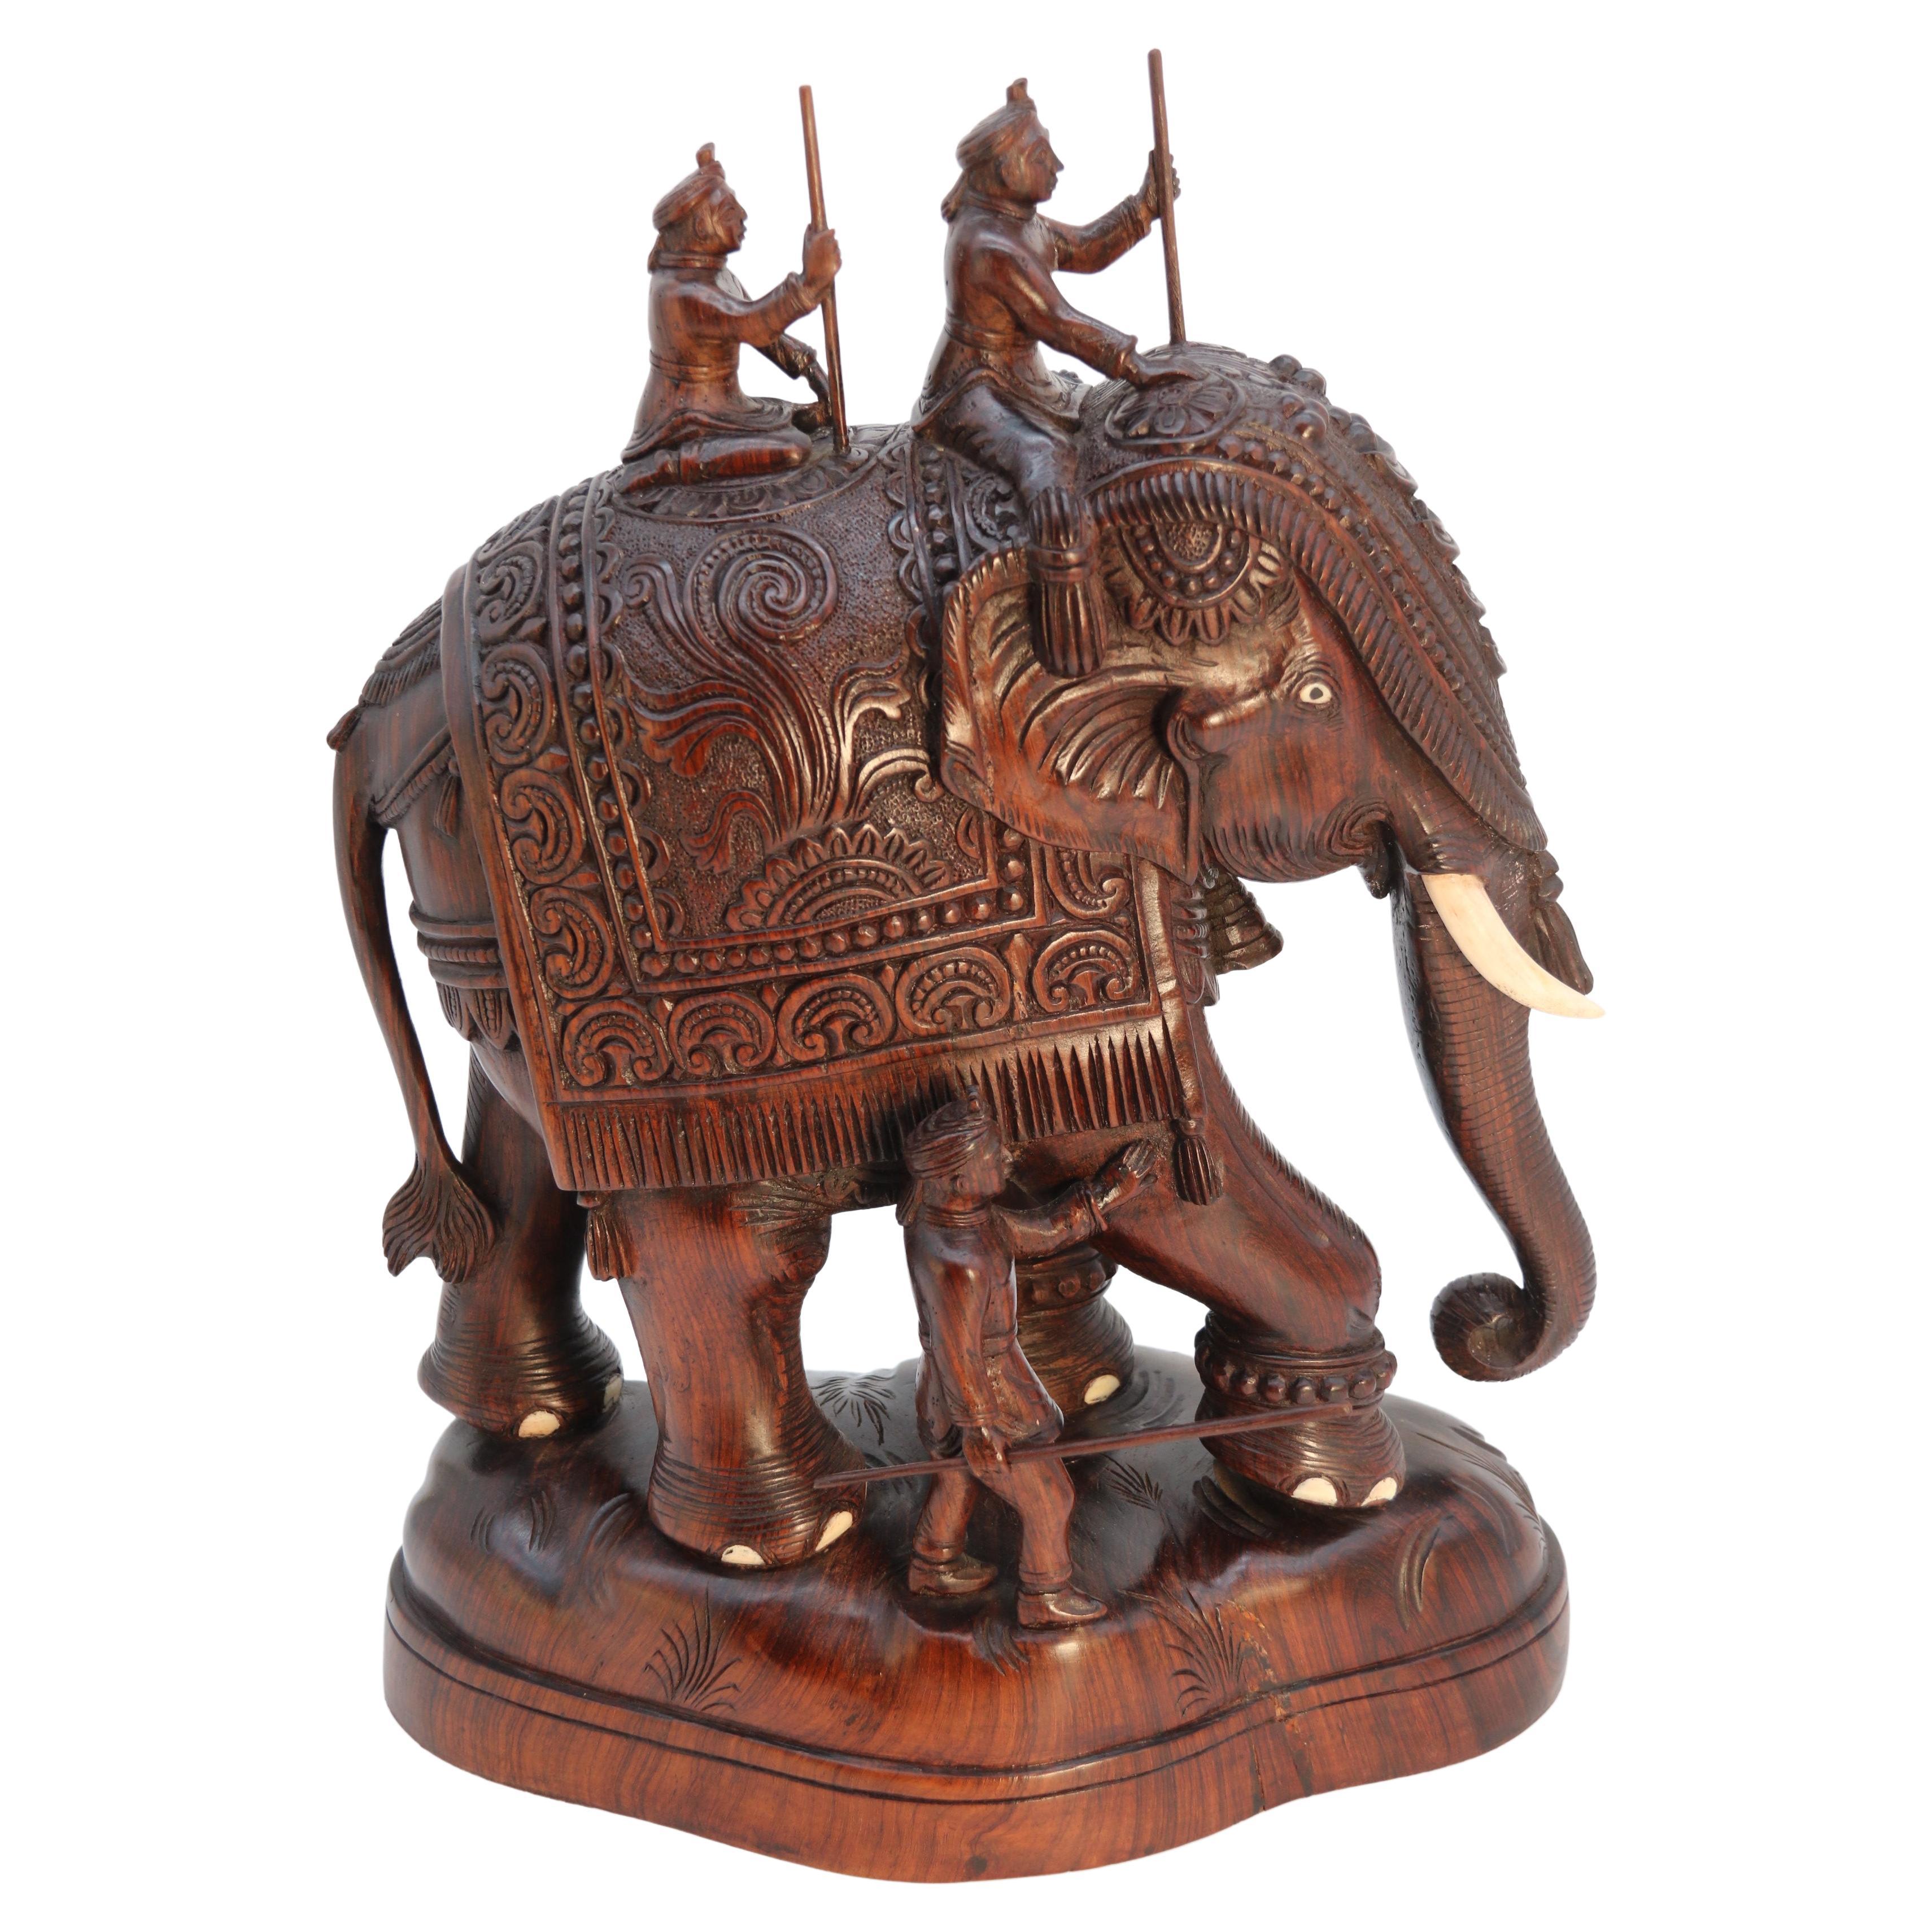 Grande étude indienne en bois dur sculpté d'un éléphant de cérémonie datant de la période Raj, vers 1920